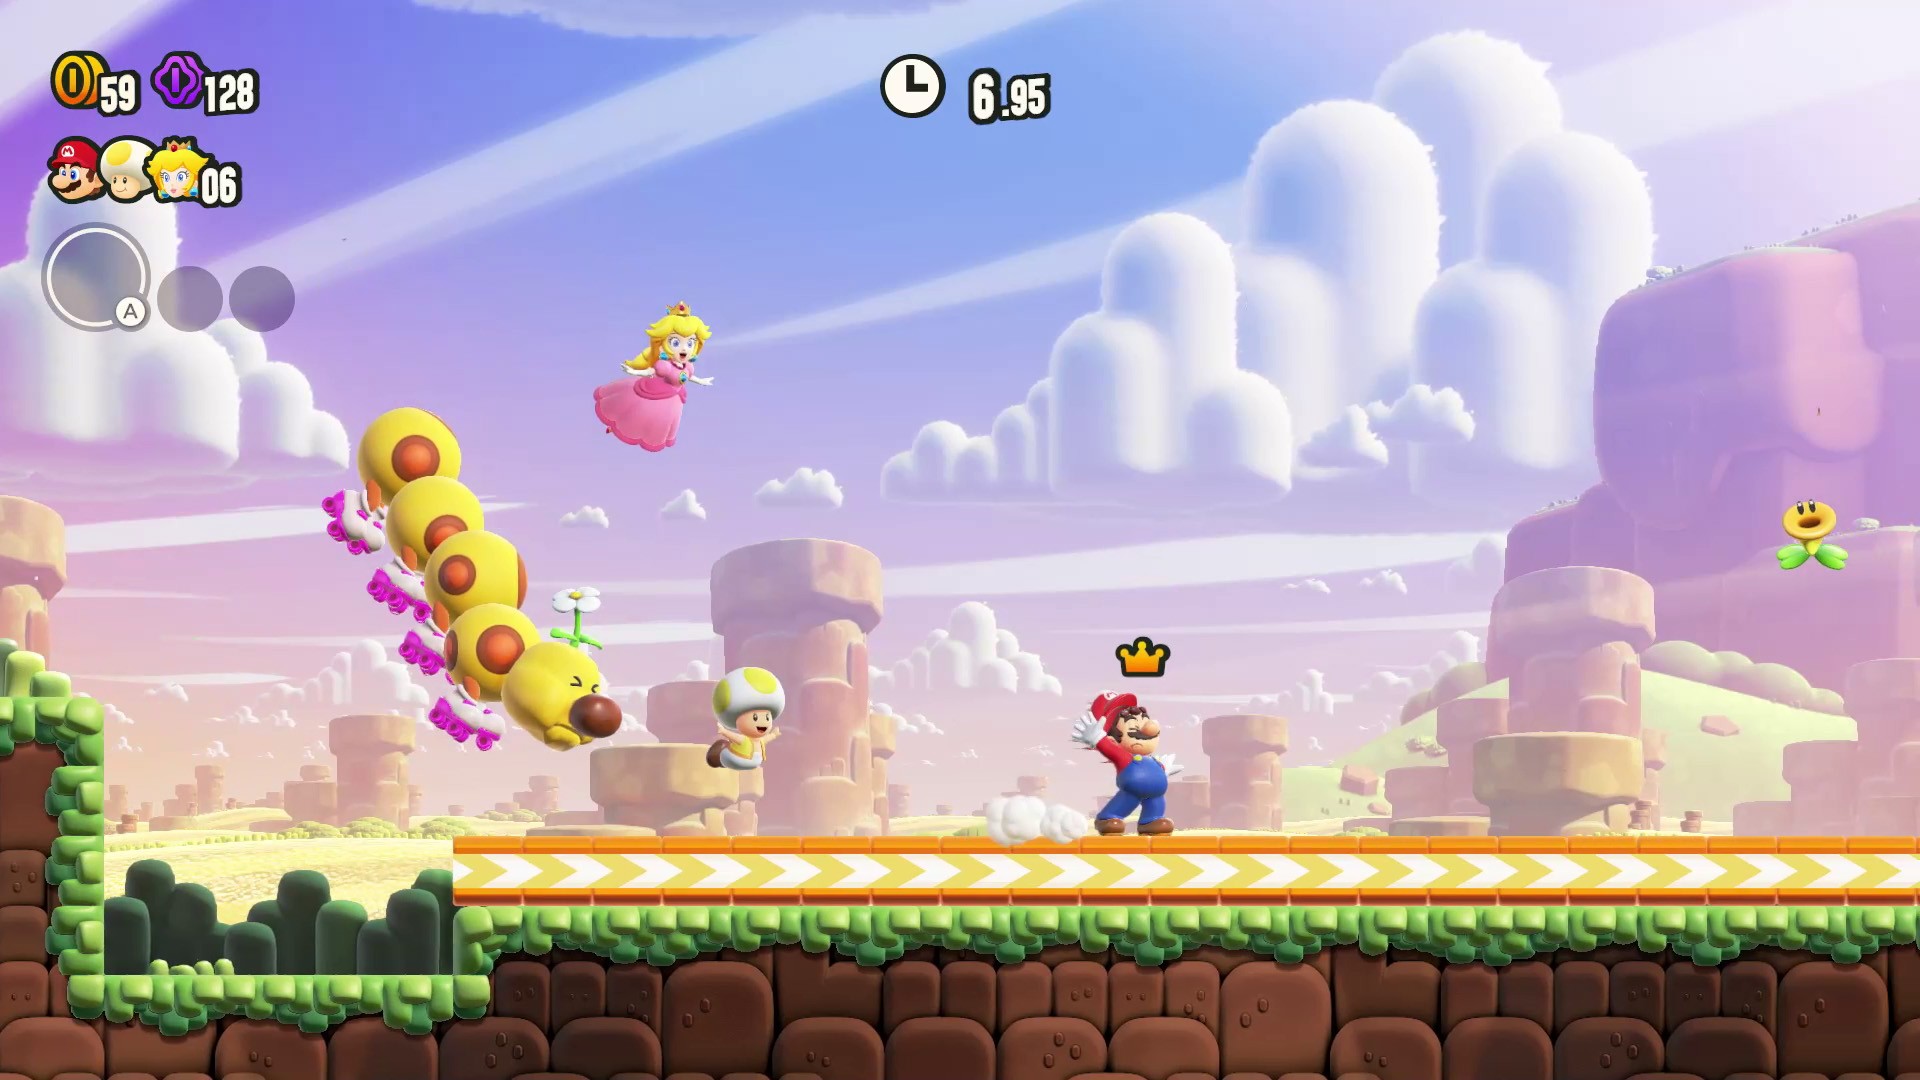 Super Mario Bros. Wonder: Nintendo Direct focado no jogo vem aí - Game Arena